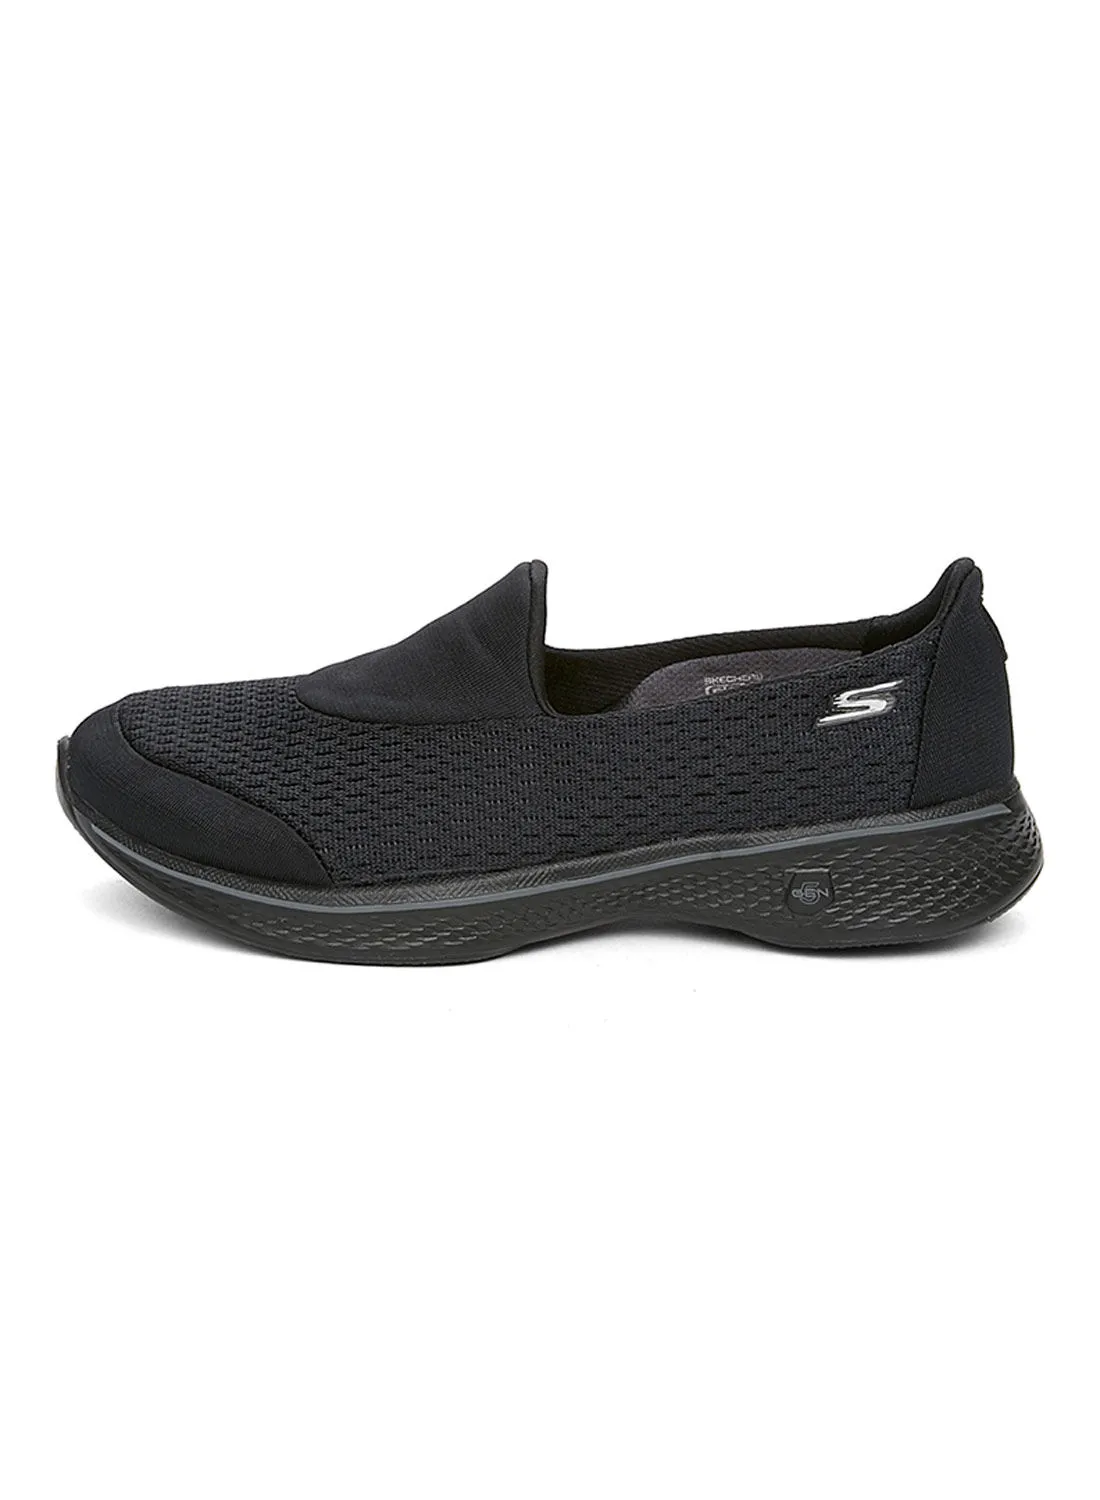 حذاء سكيتشرز جو ووك 4 بيرسوت الرياضي للمشي باللون الأسود